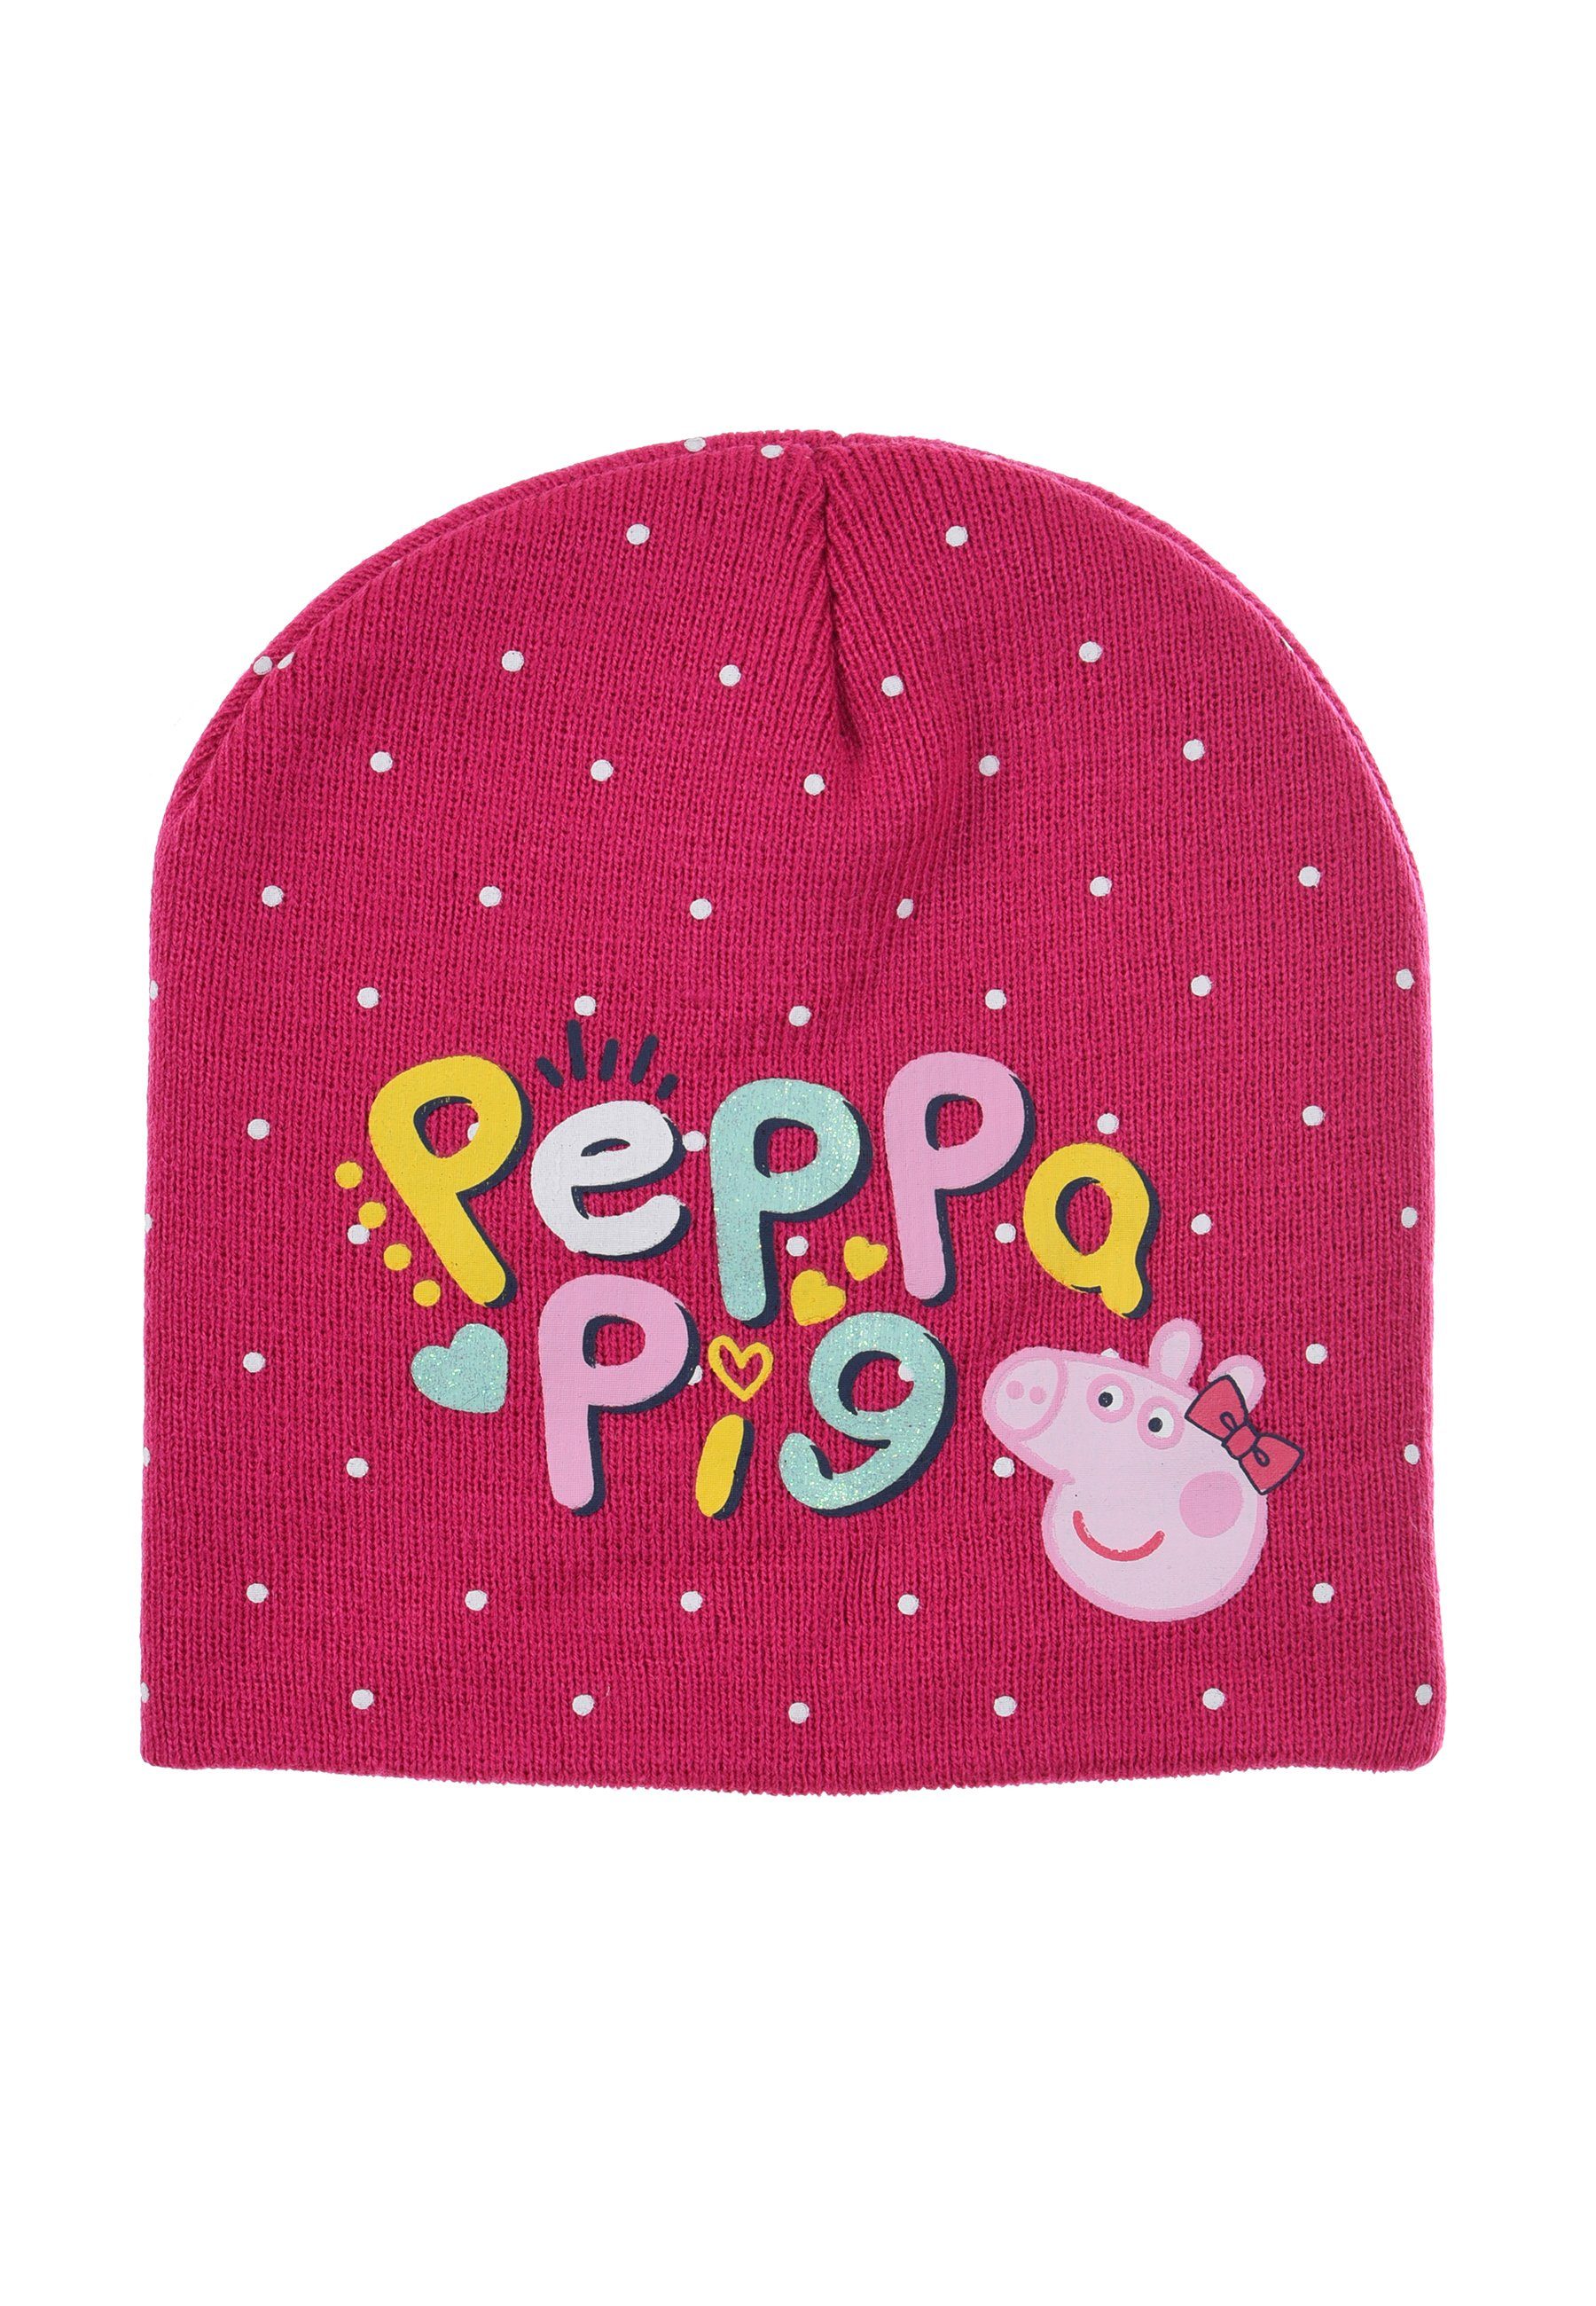 Peppa Pig Beanie Peppa Wutz Kinder Pink Mädchen Winter-Mütze